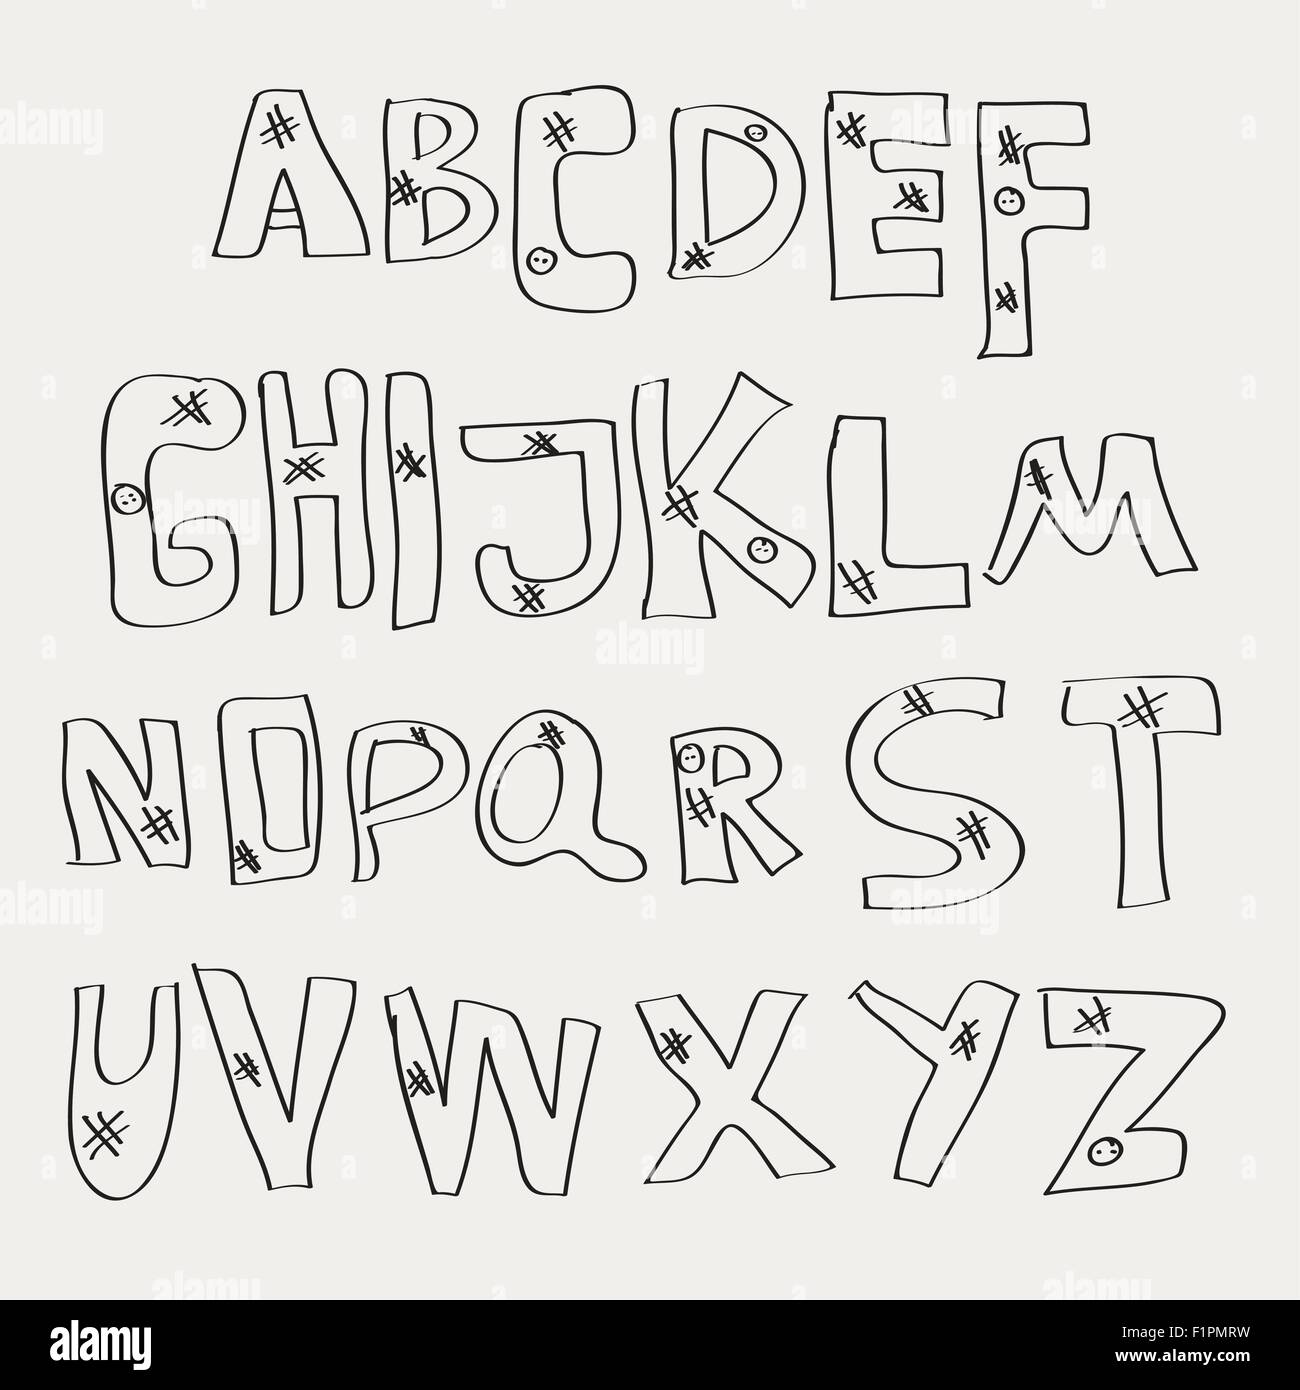 Handzeichnung Alphabet-Vektor-Illustration auf hellem Hintergrund Stock Vektor